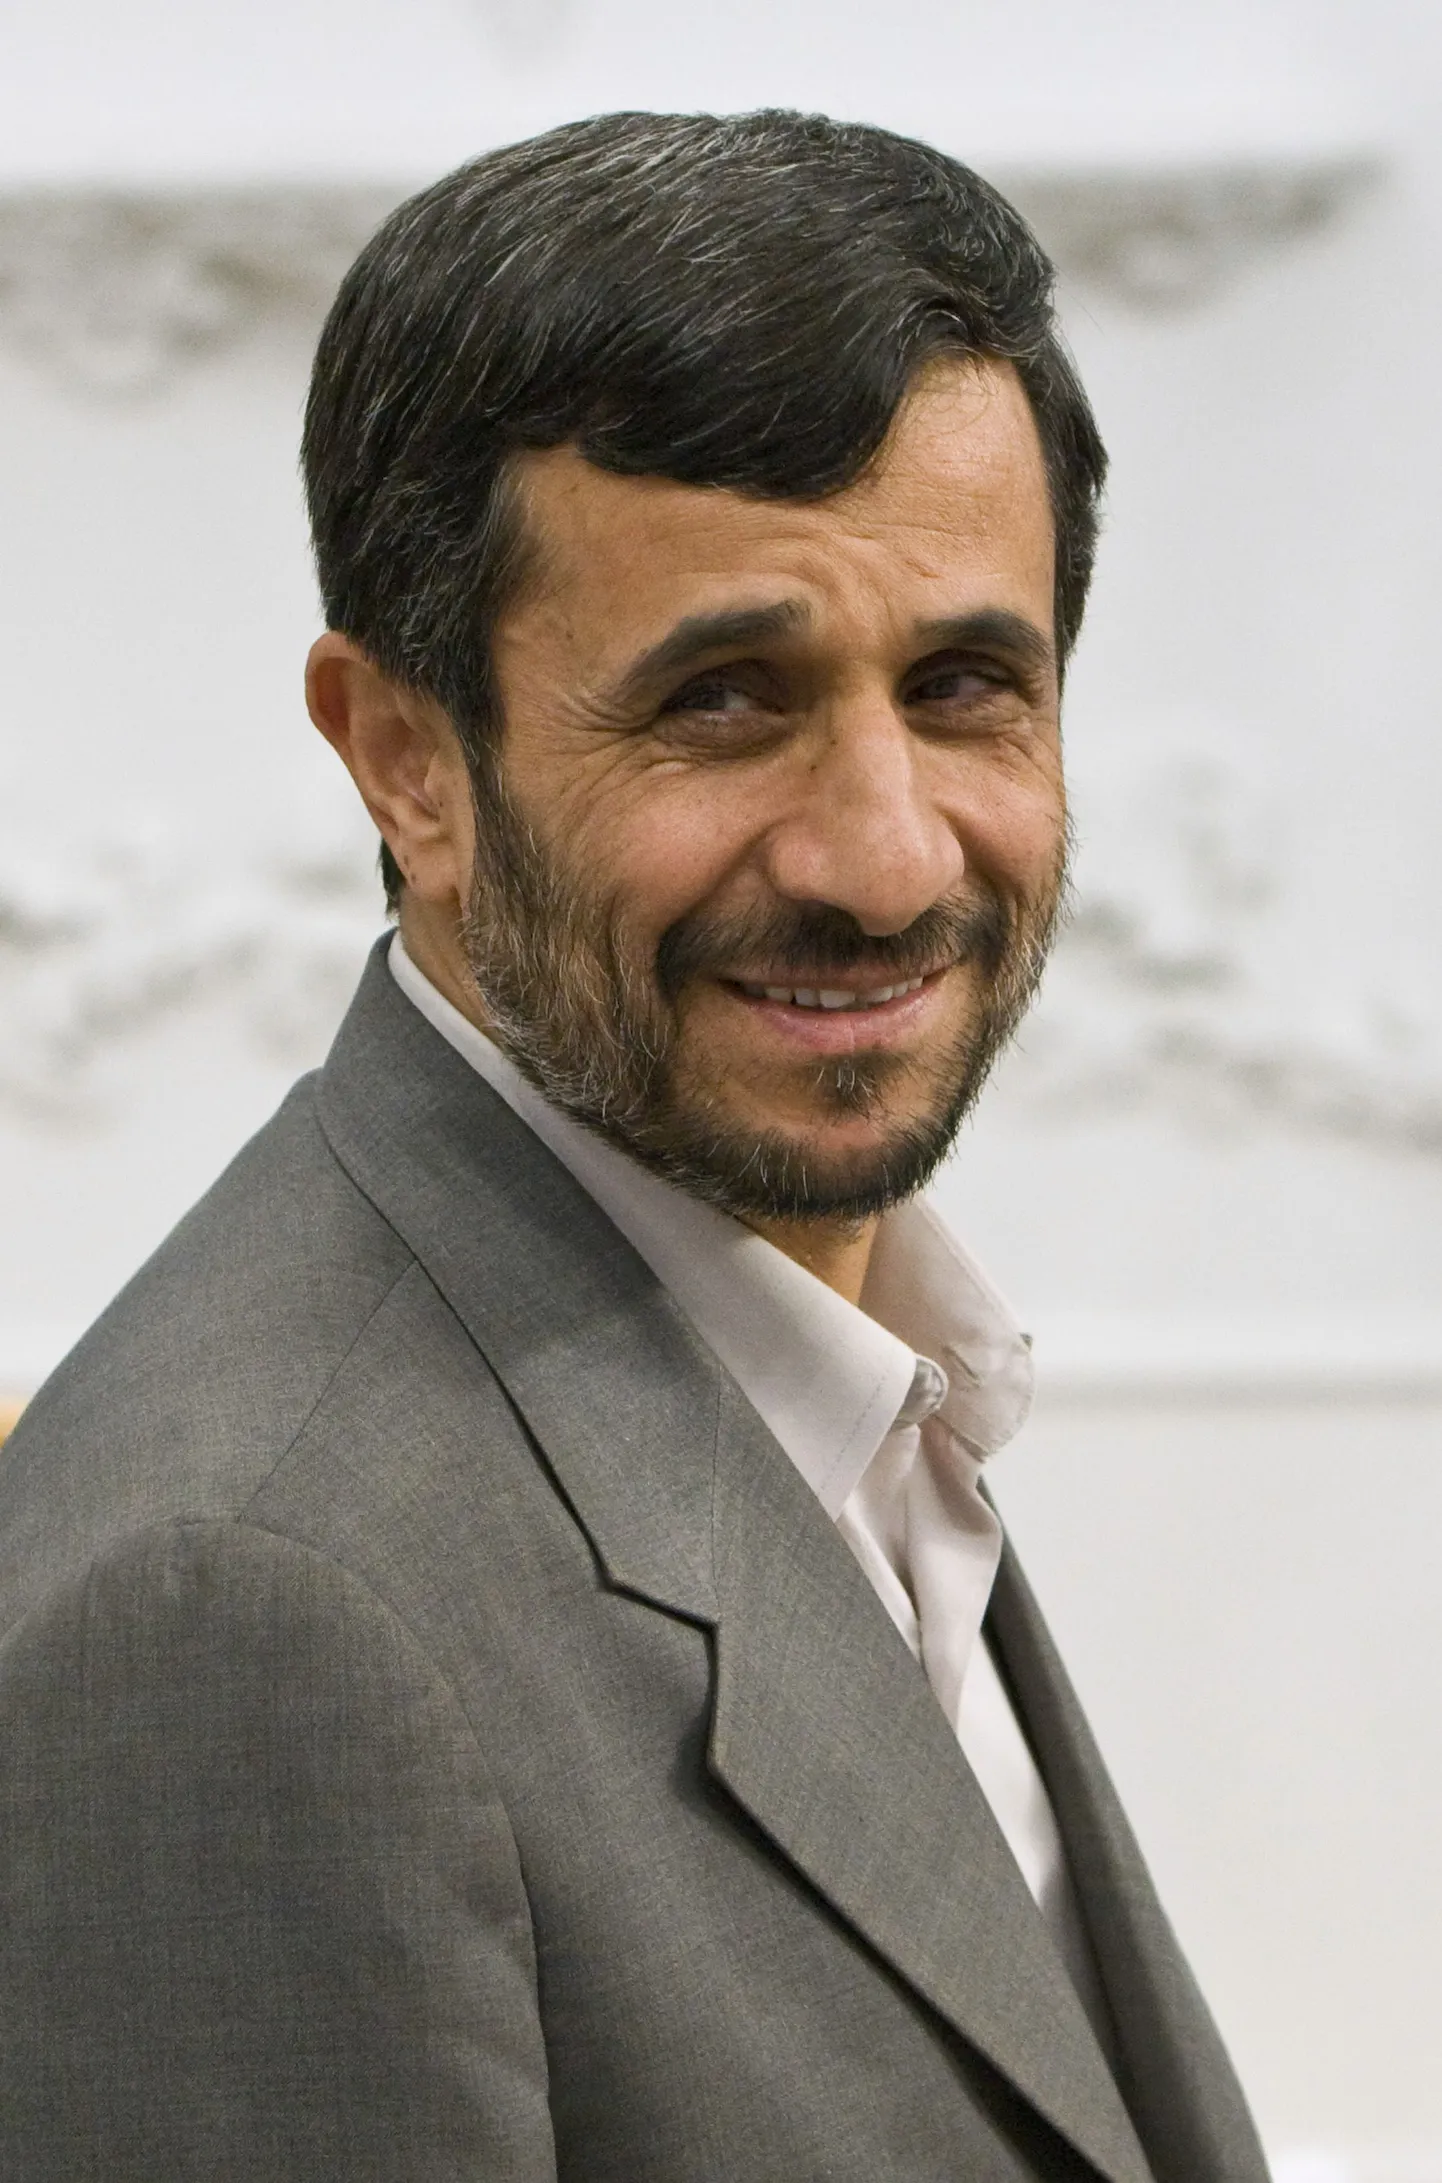 Iraani president Mahmoud Ahmadinejad.